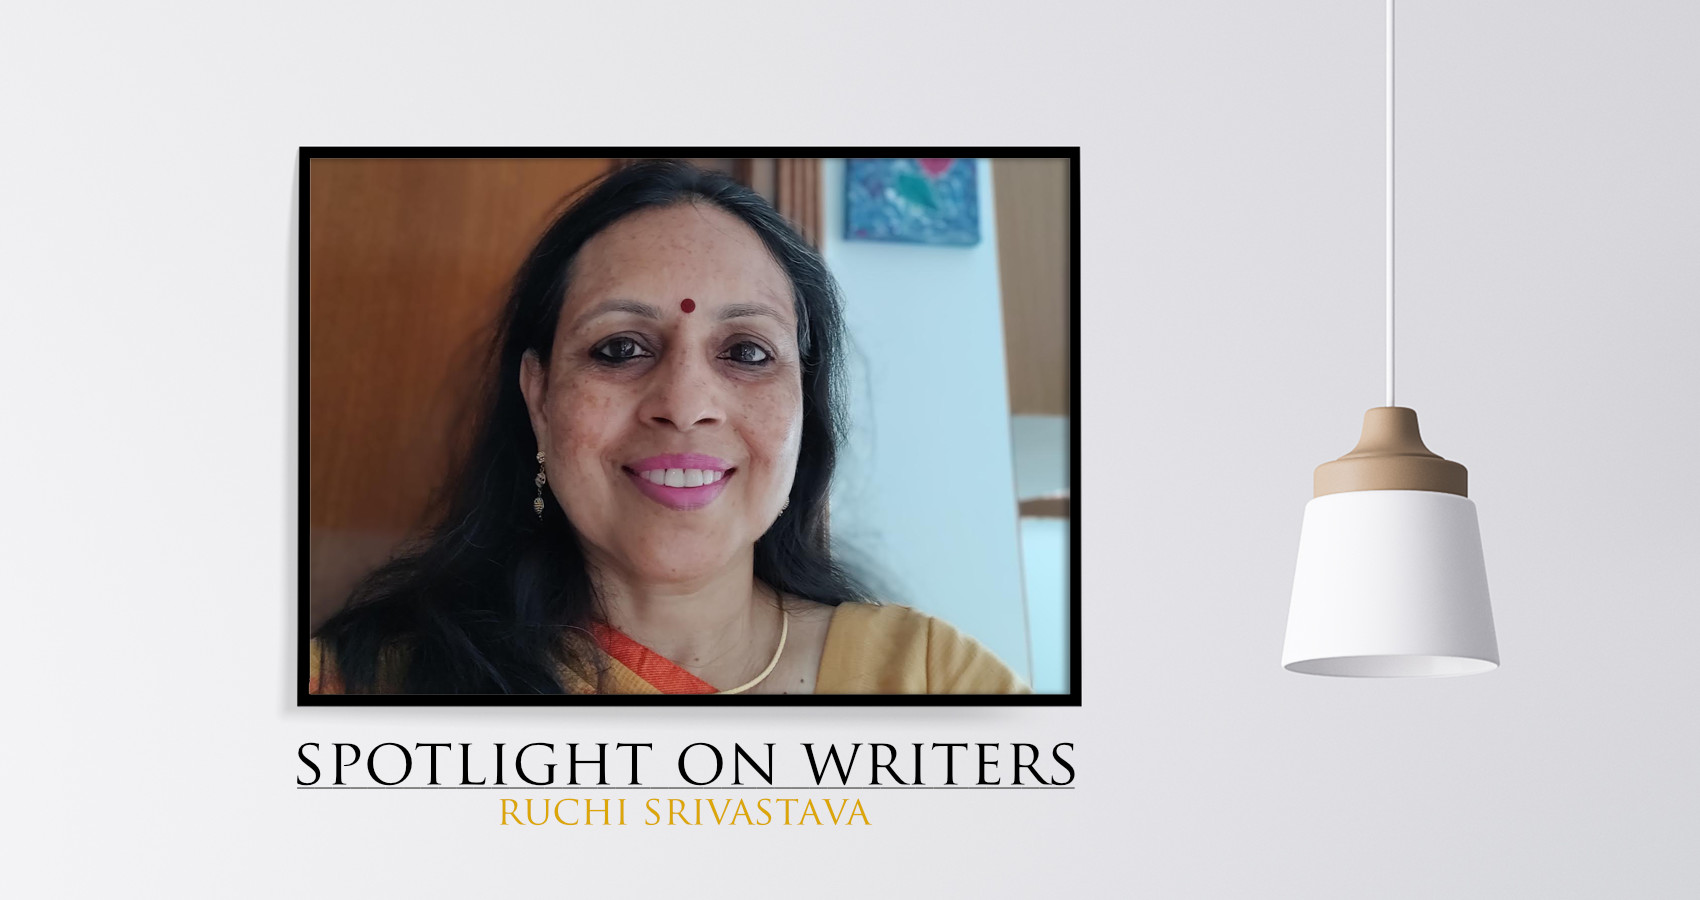 Spotlight On Writers - Ruchi Srivastava, interview at Spillwords.com